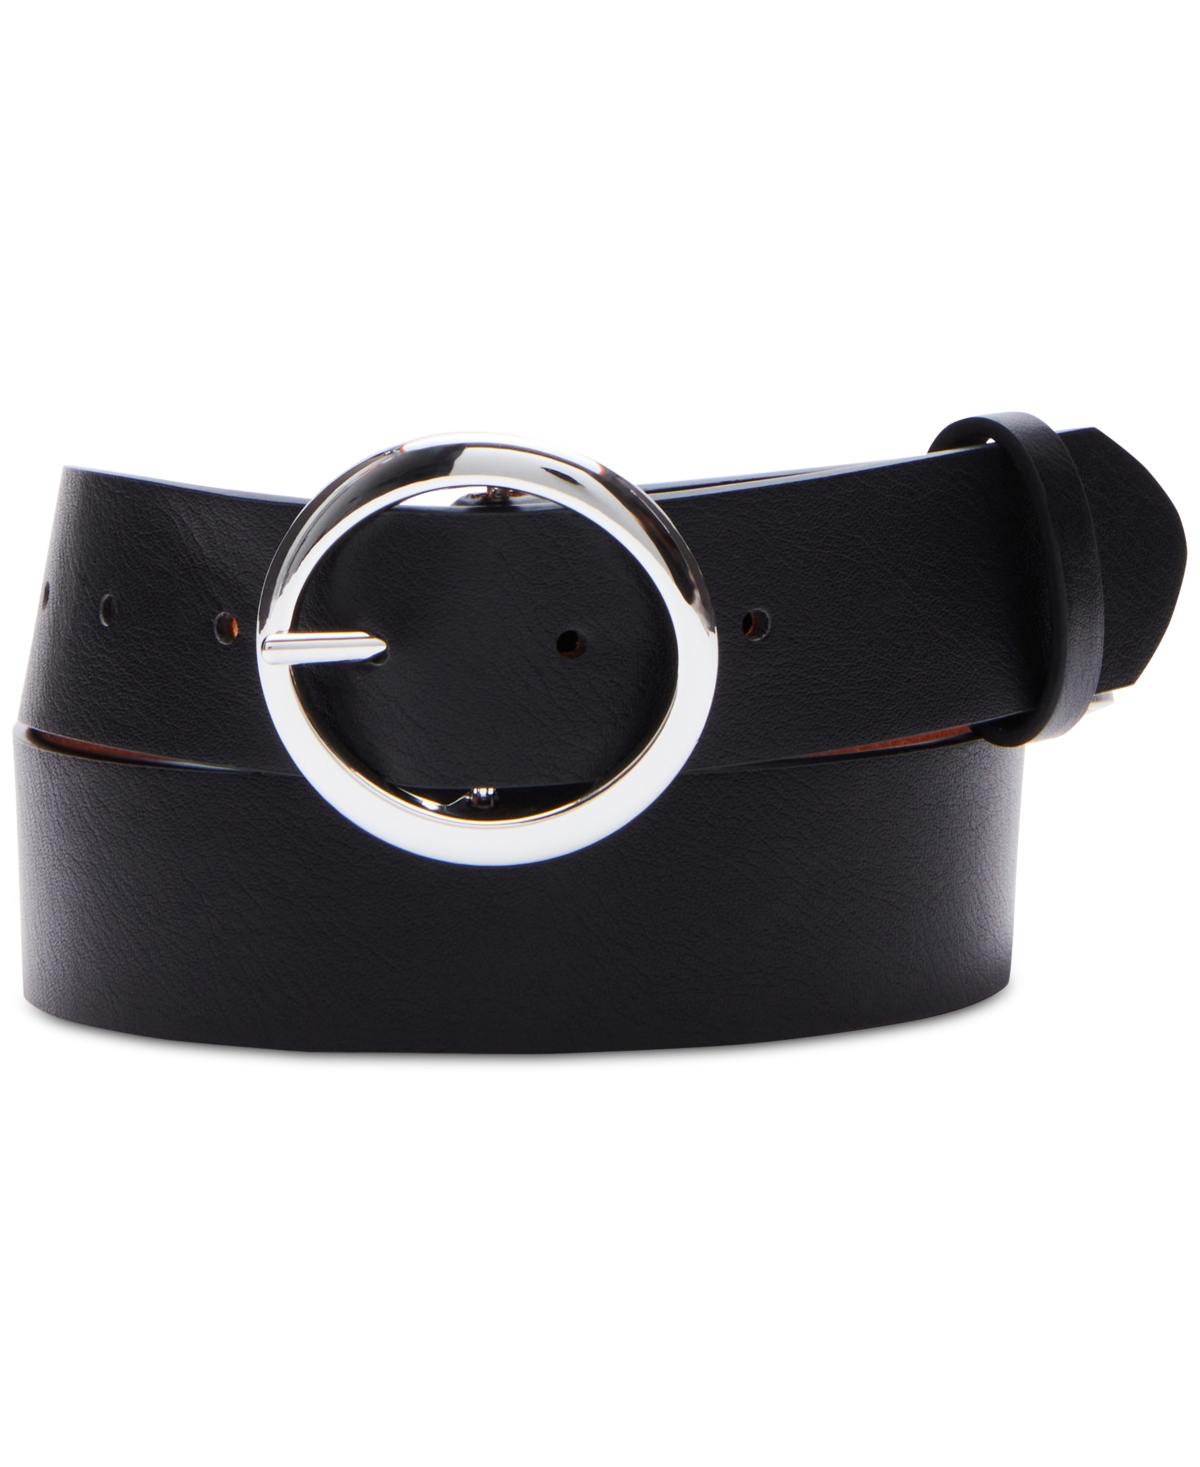 Women's Reversible Faux-Leather Belt - Black/cognac